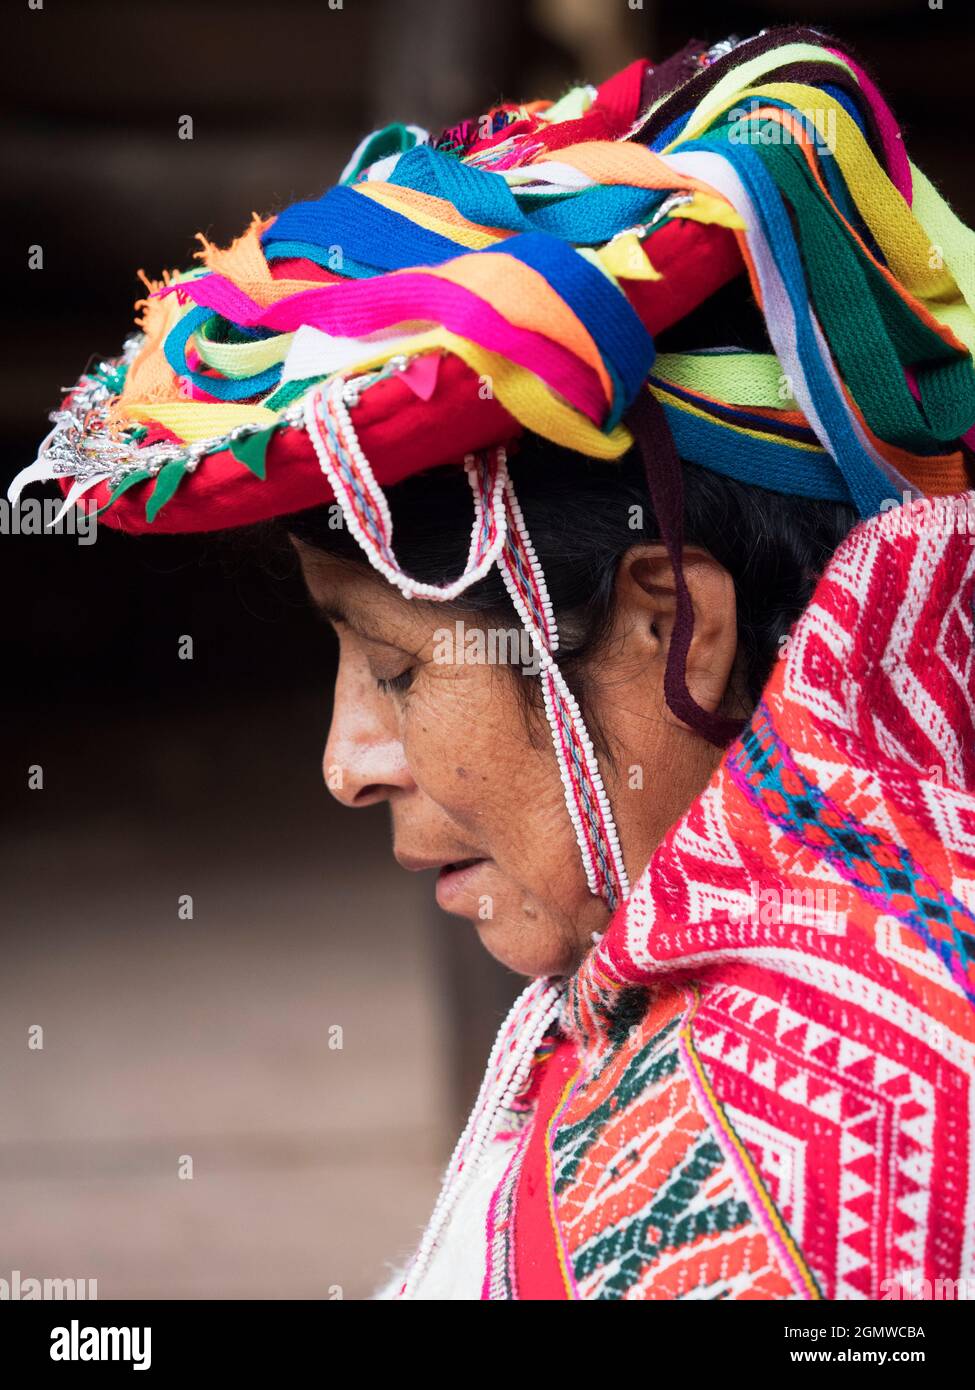 Awanakancha, Perù - 11 maggio 2018; una donna in colpo Ritratto di un tessitore in Awanakancha, indossando colorato costume tradizionale tribale. Foto Stock